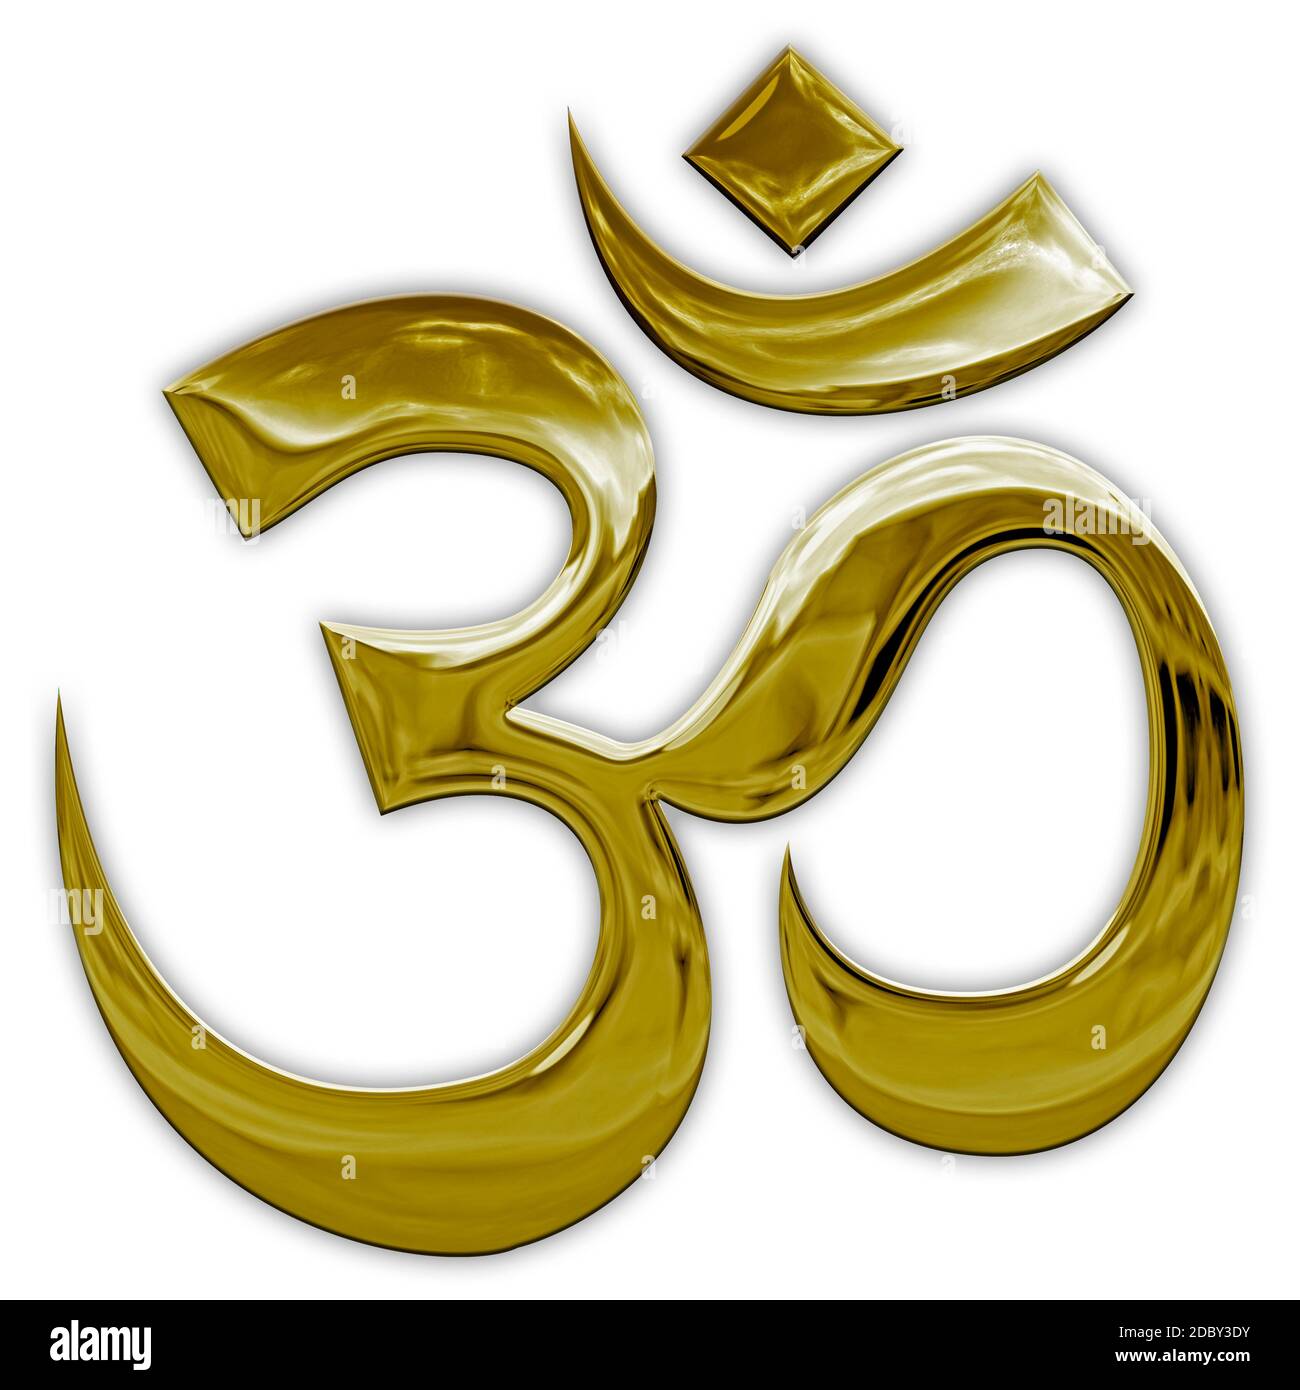 Ohm, Asian religious and meditation symbol, metallic finish, graphic elaboration Stock Photo